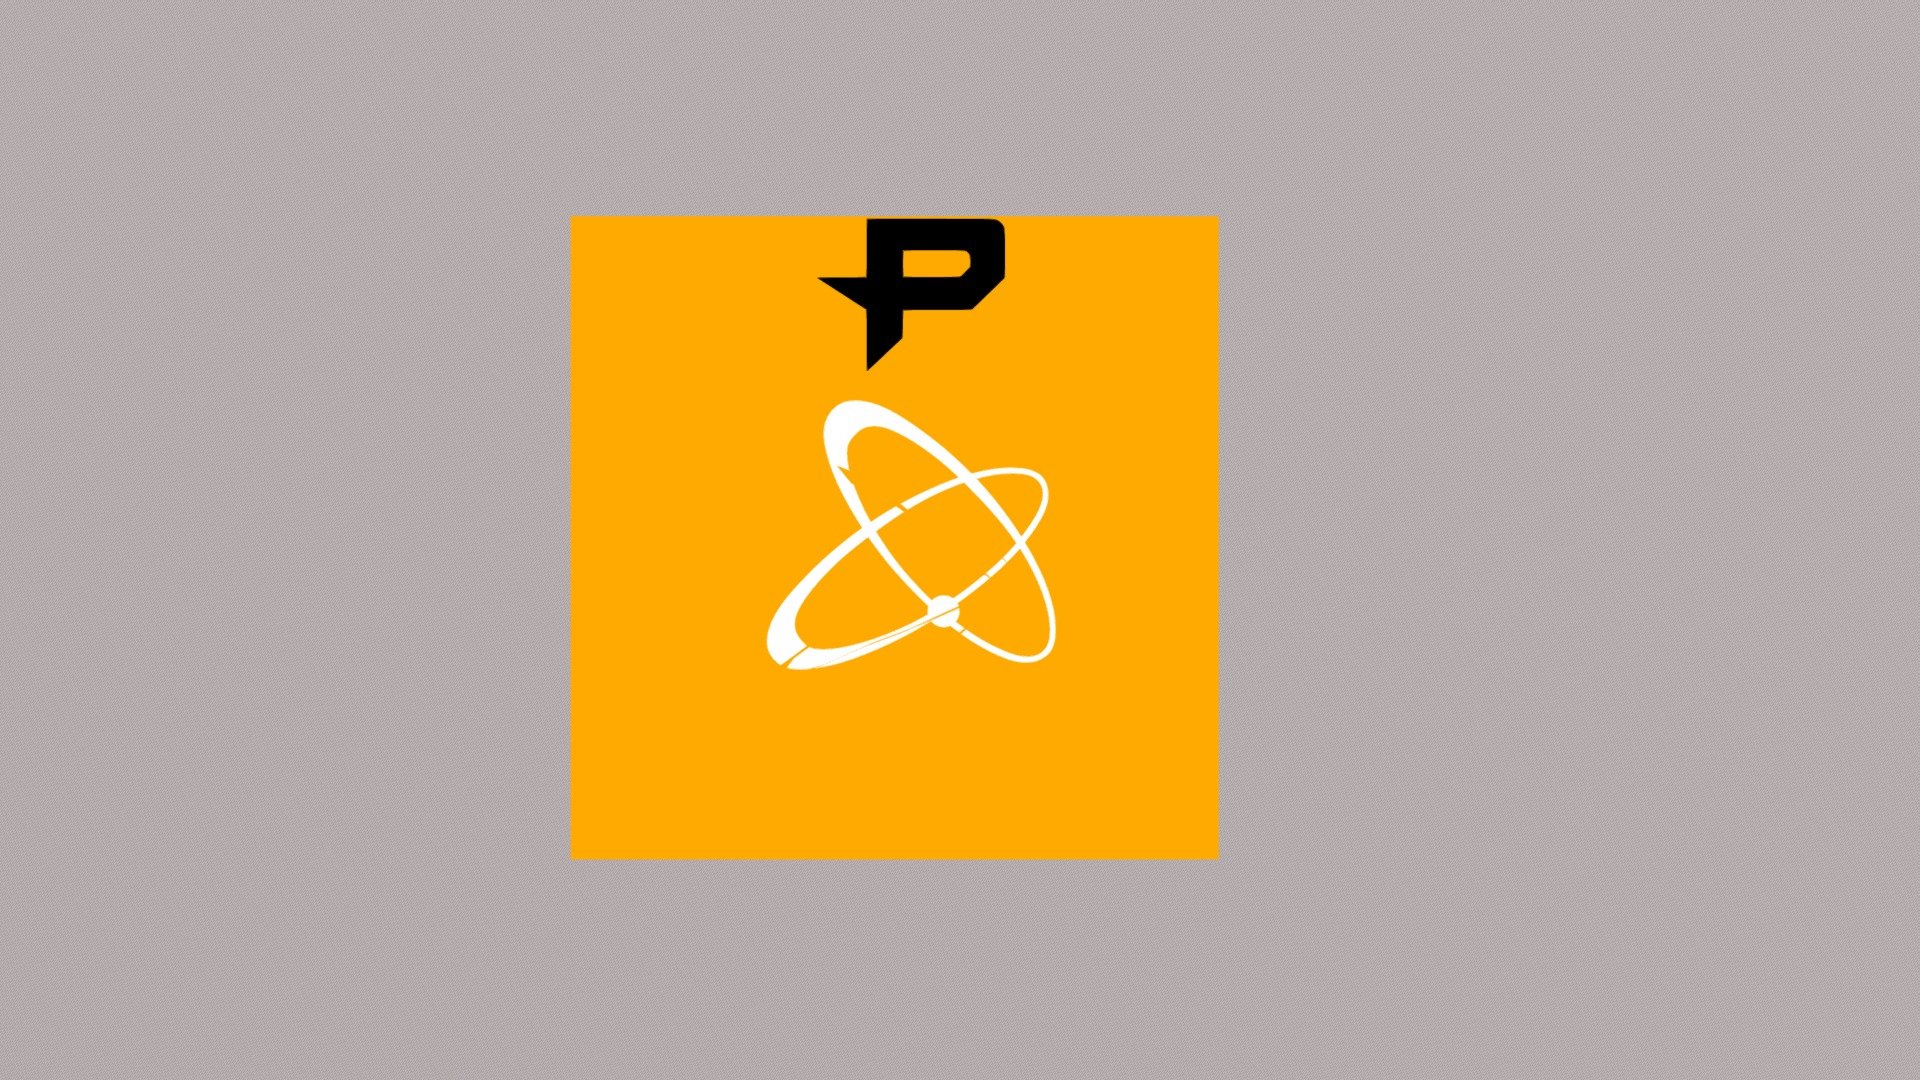 Philadelphia fusion logo